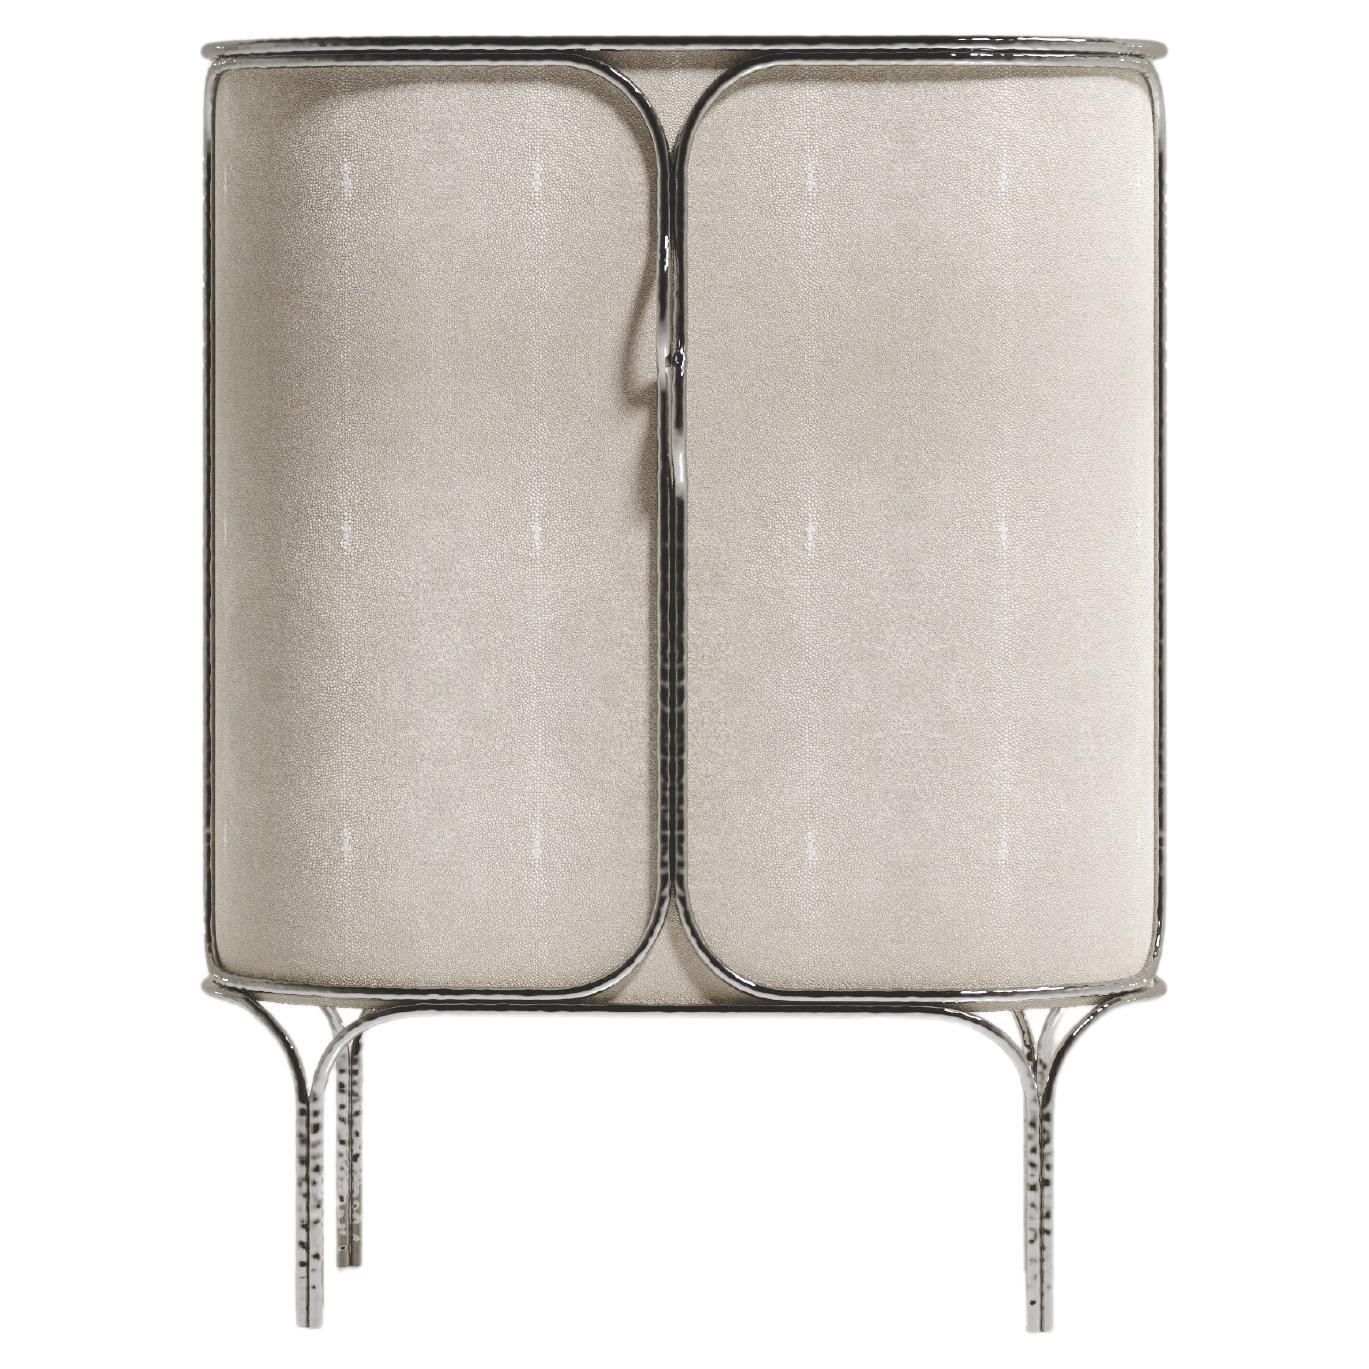 Meuble de rangement de bar en galuchat avec détails en acier inoxydable de finition chromée de R&Y Augousti